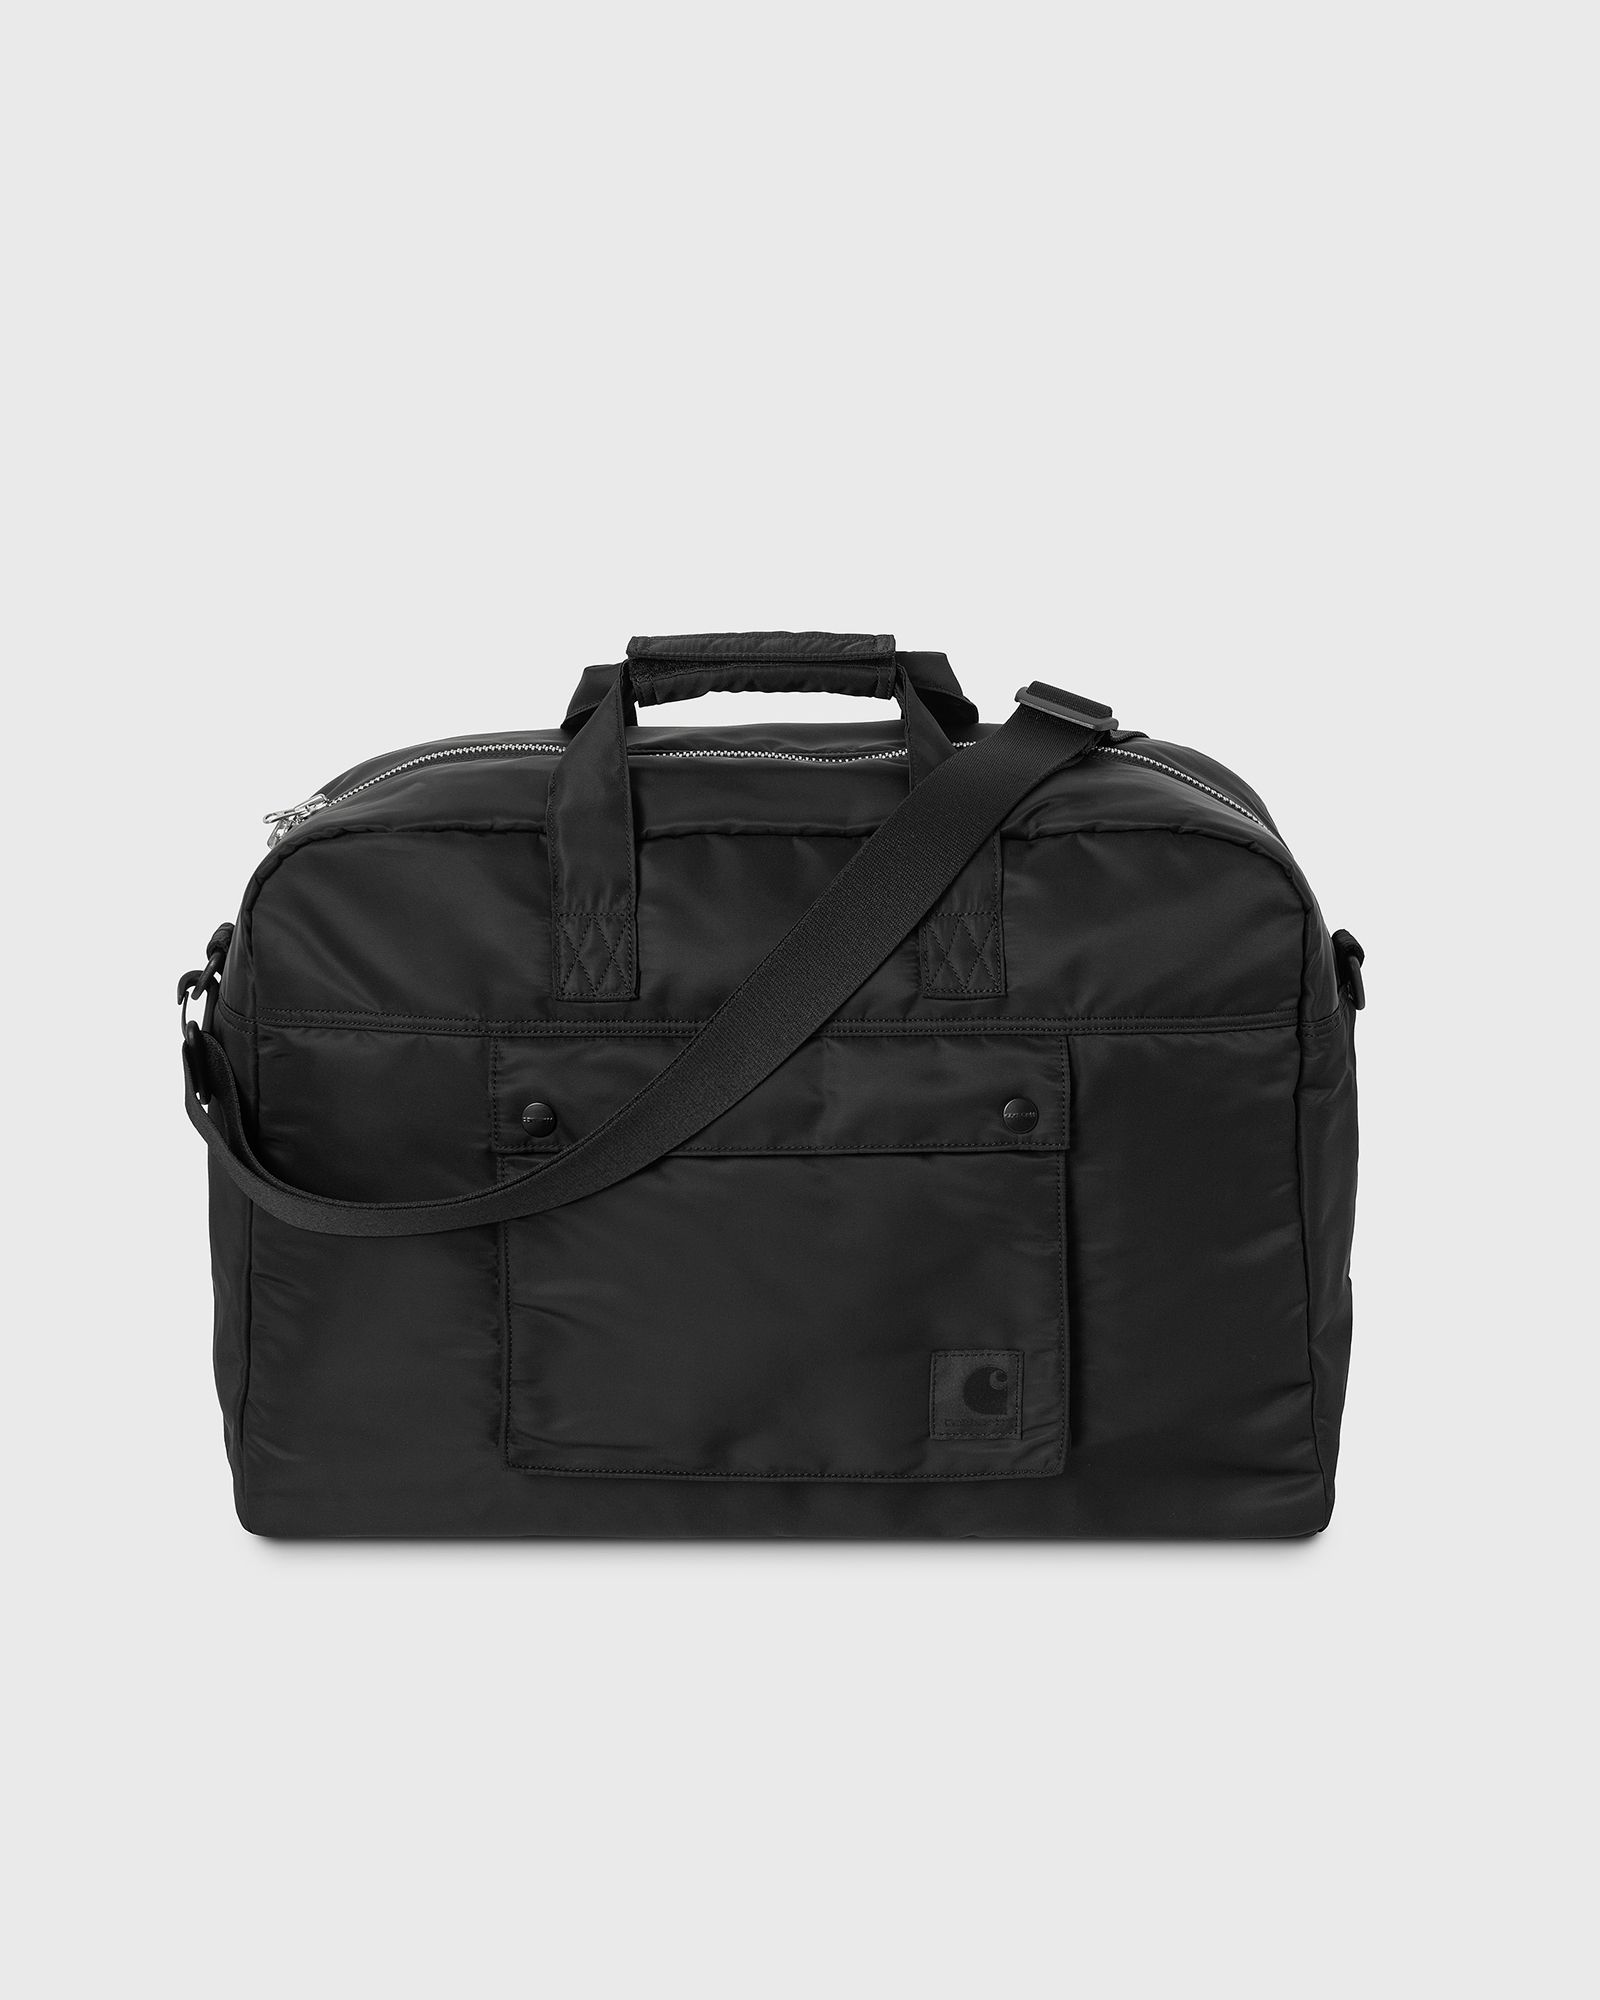 Carhartt WIP - otley weekend bag men duffle bags & weekender black in größe:one size